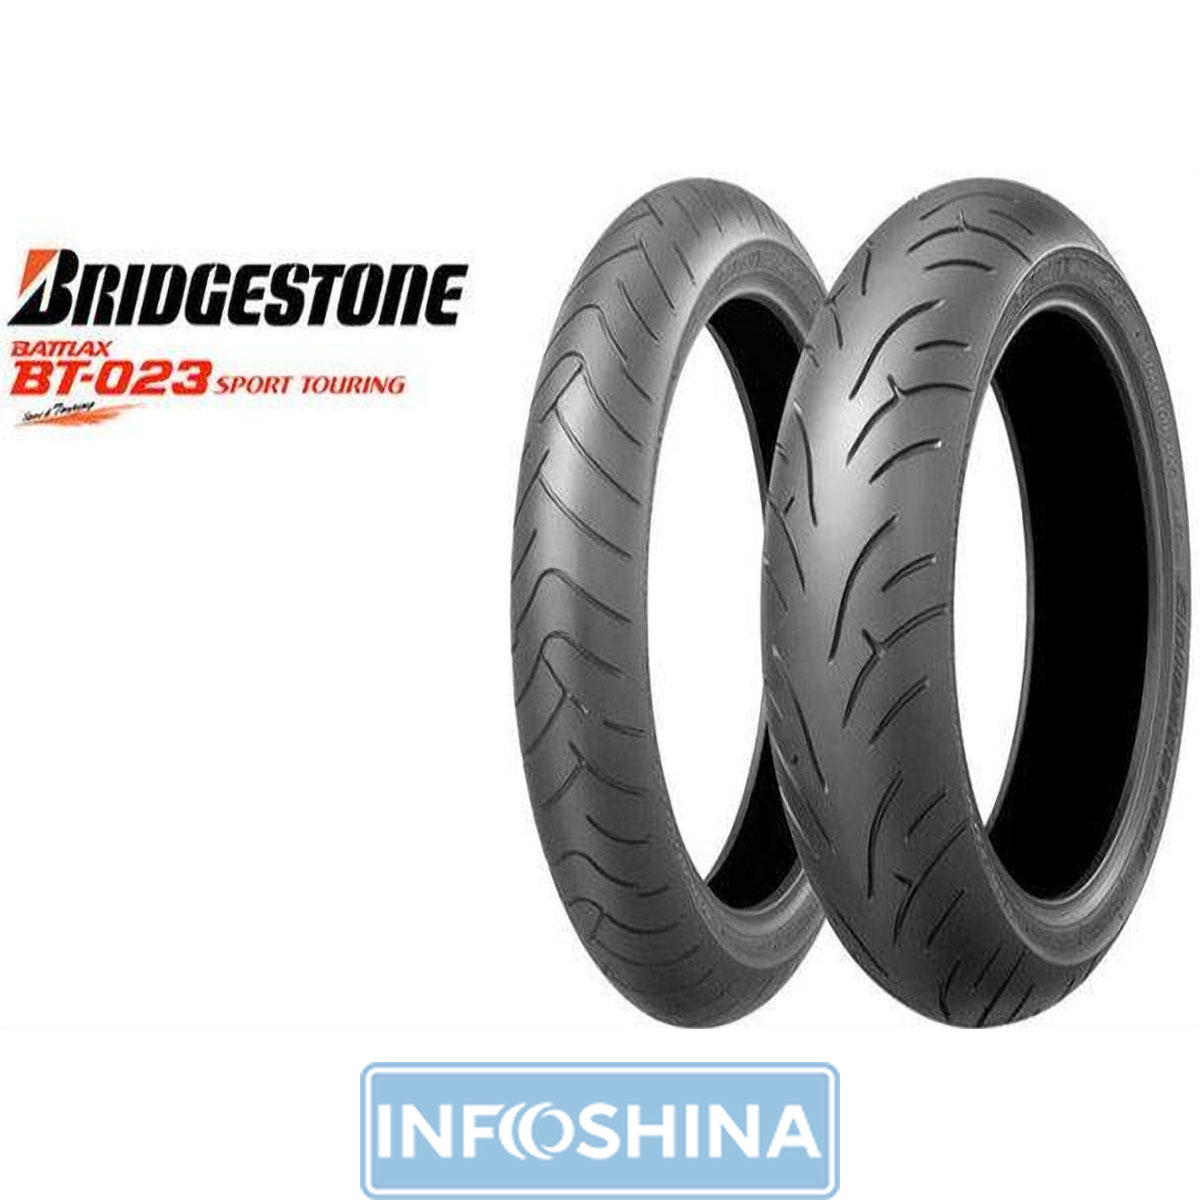 Купить шины Bridgestone S20 190/55 R17 75W